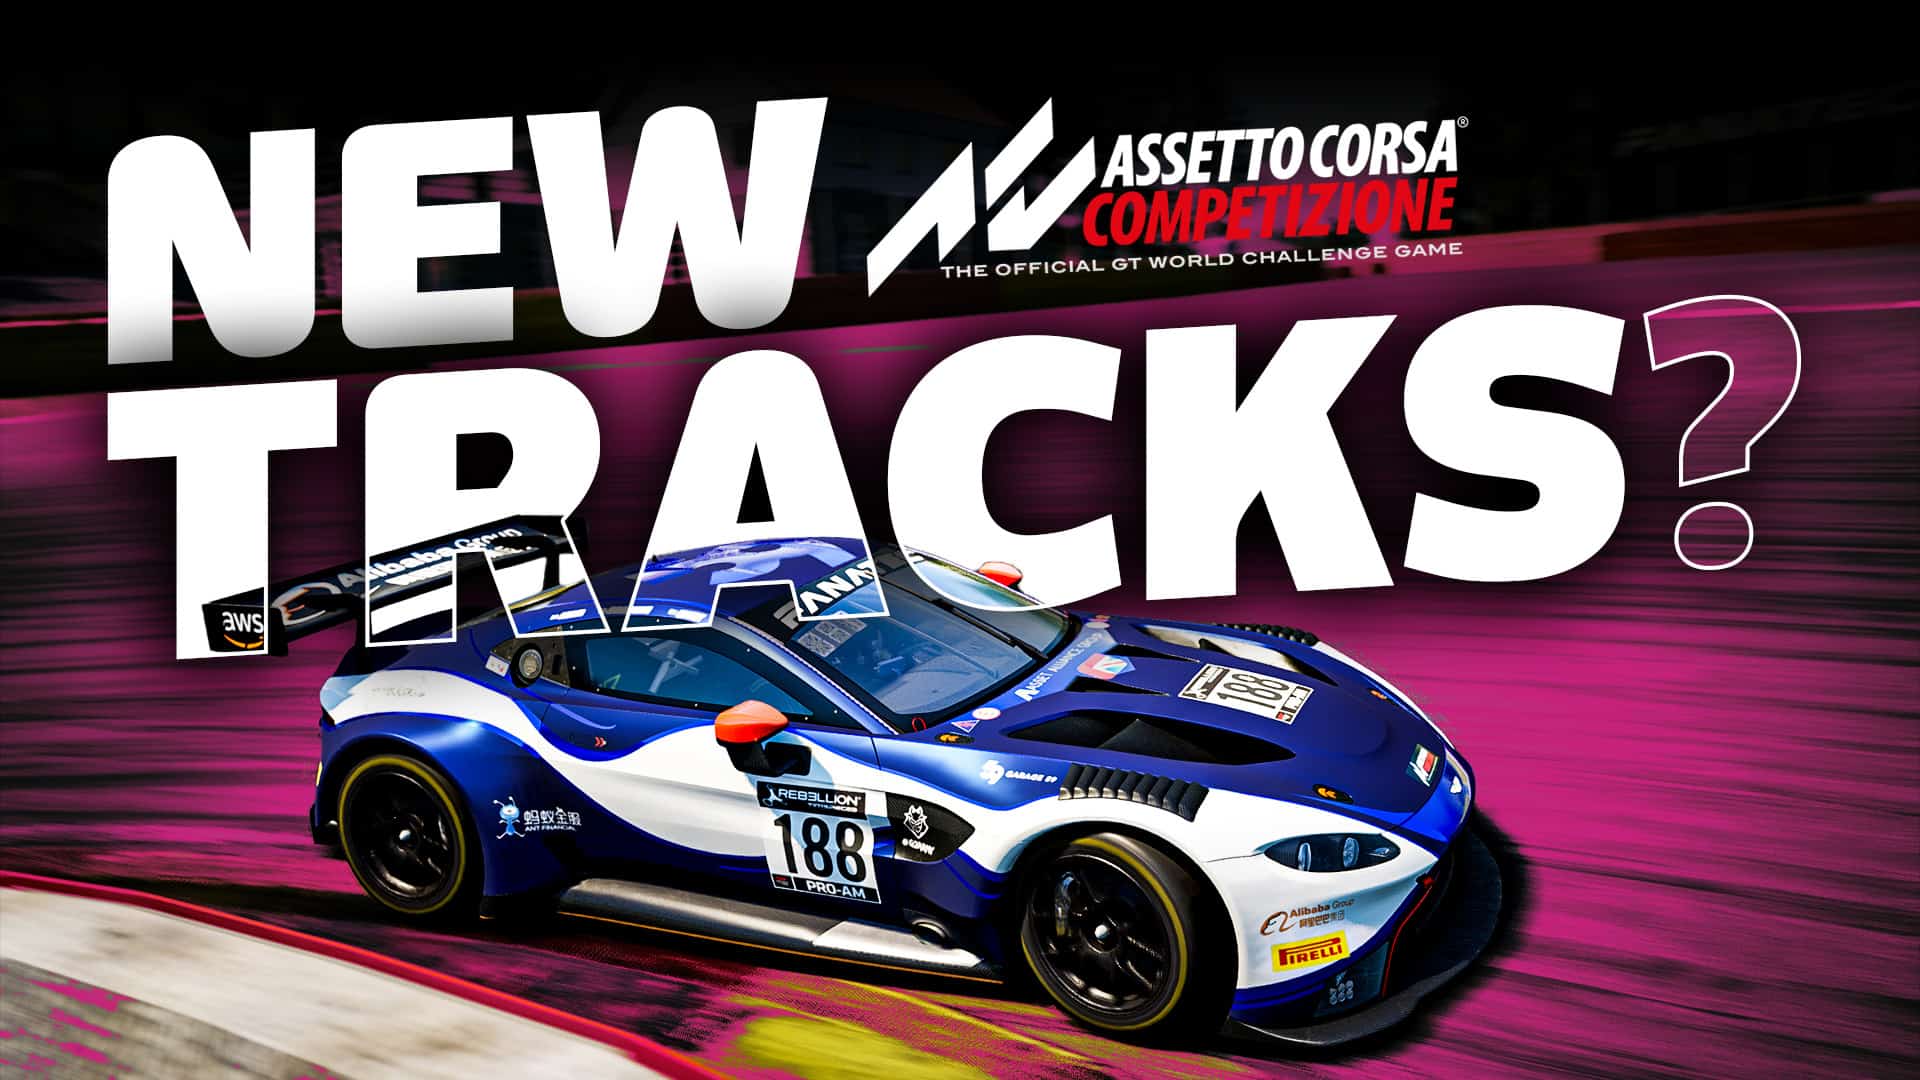 Assetto Corsa Competizione 2020 GT World Challenge Pack PC Steam